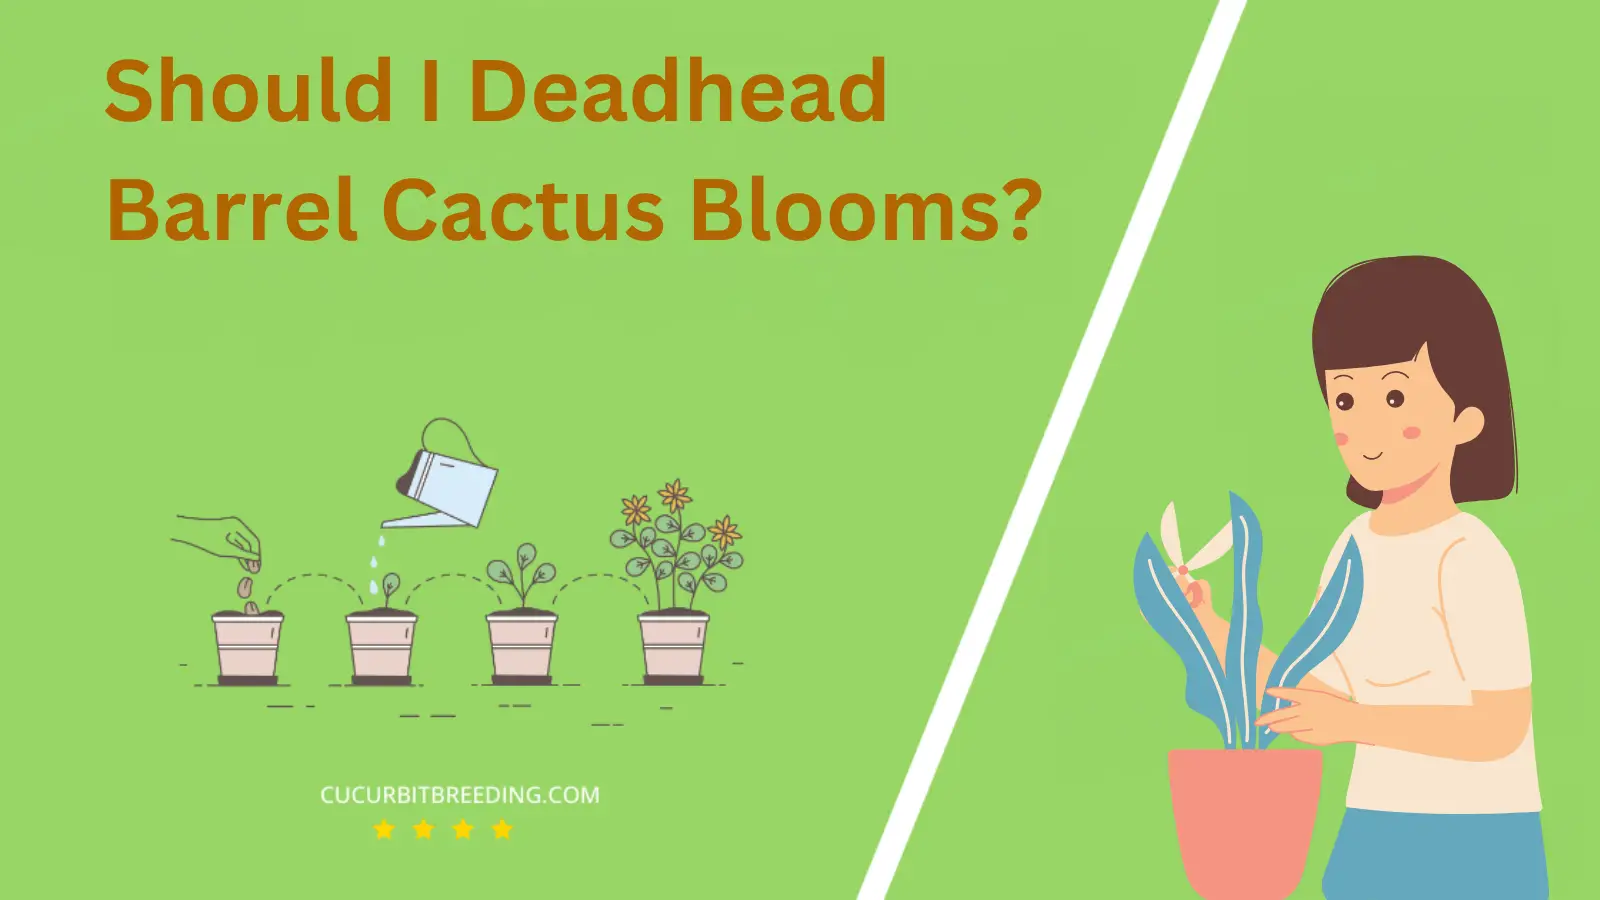 Should I Deadhead Barrel Cactus Blooms?